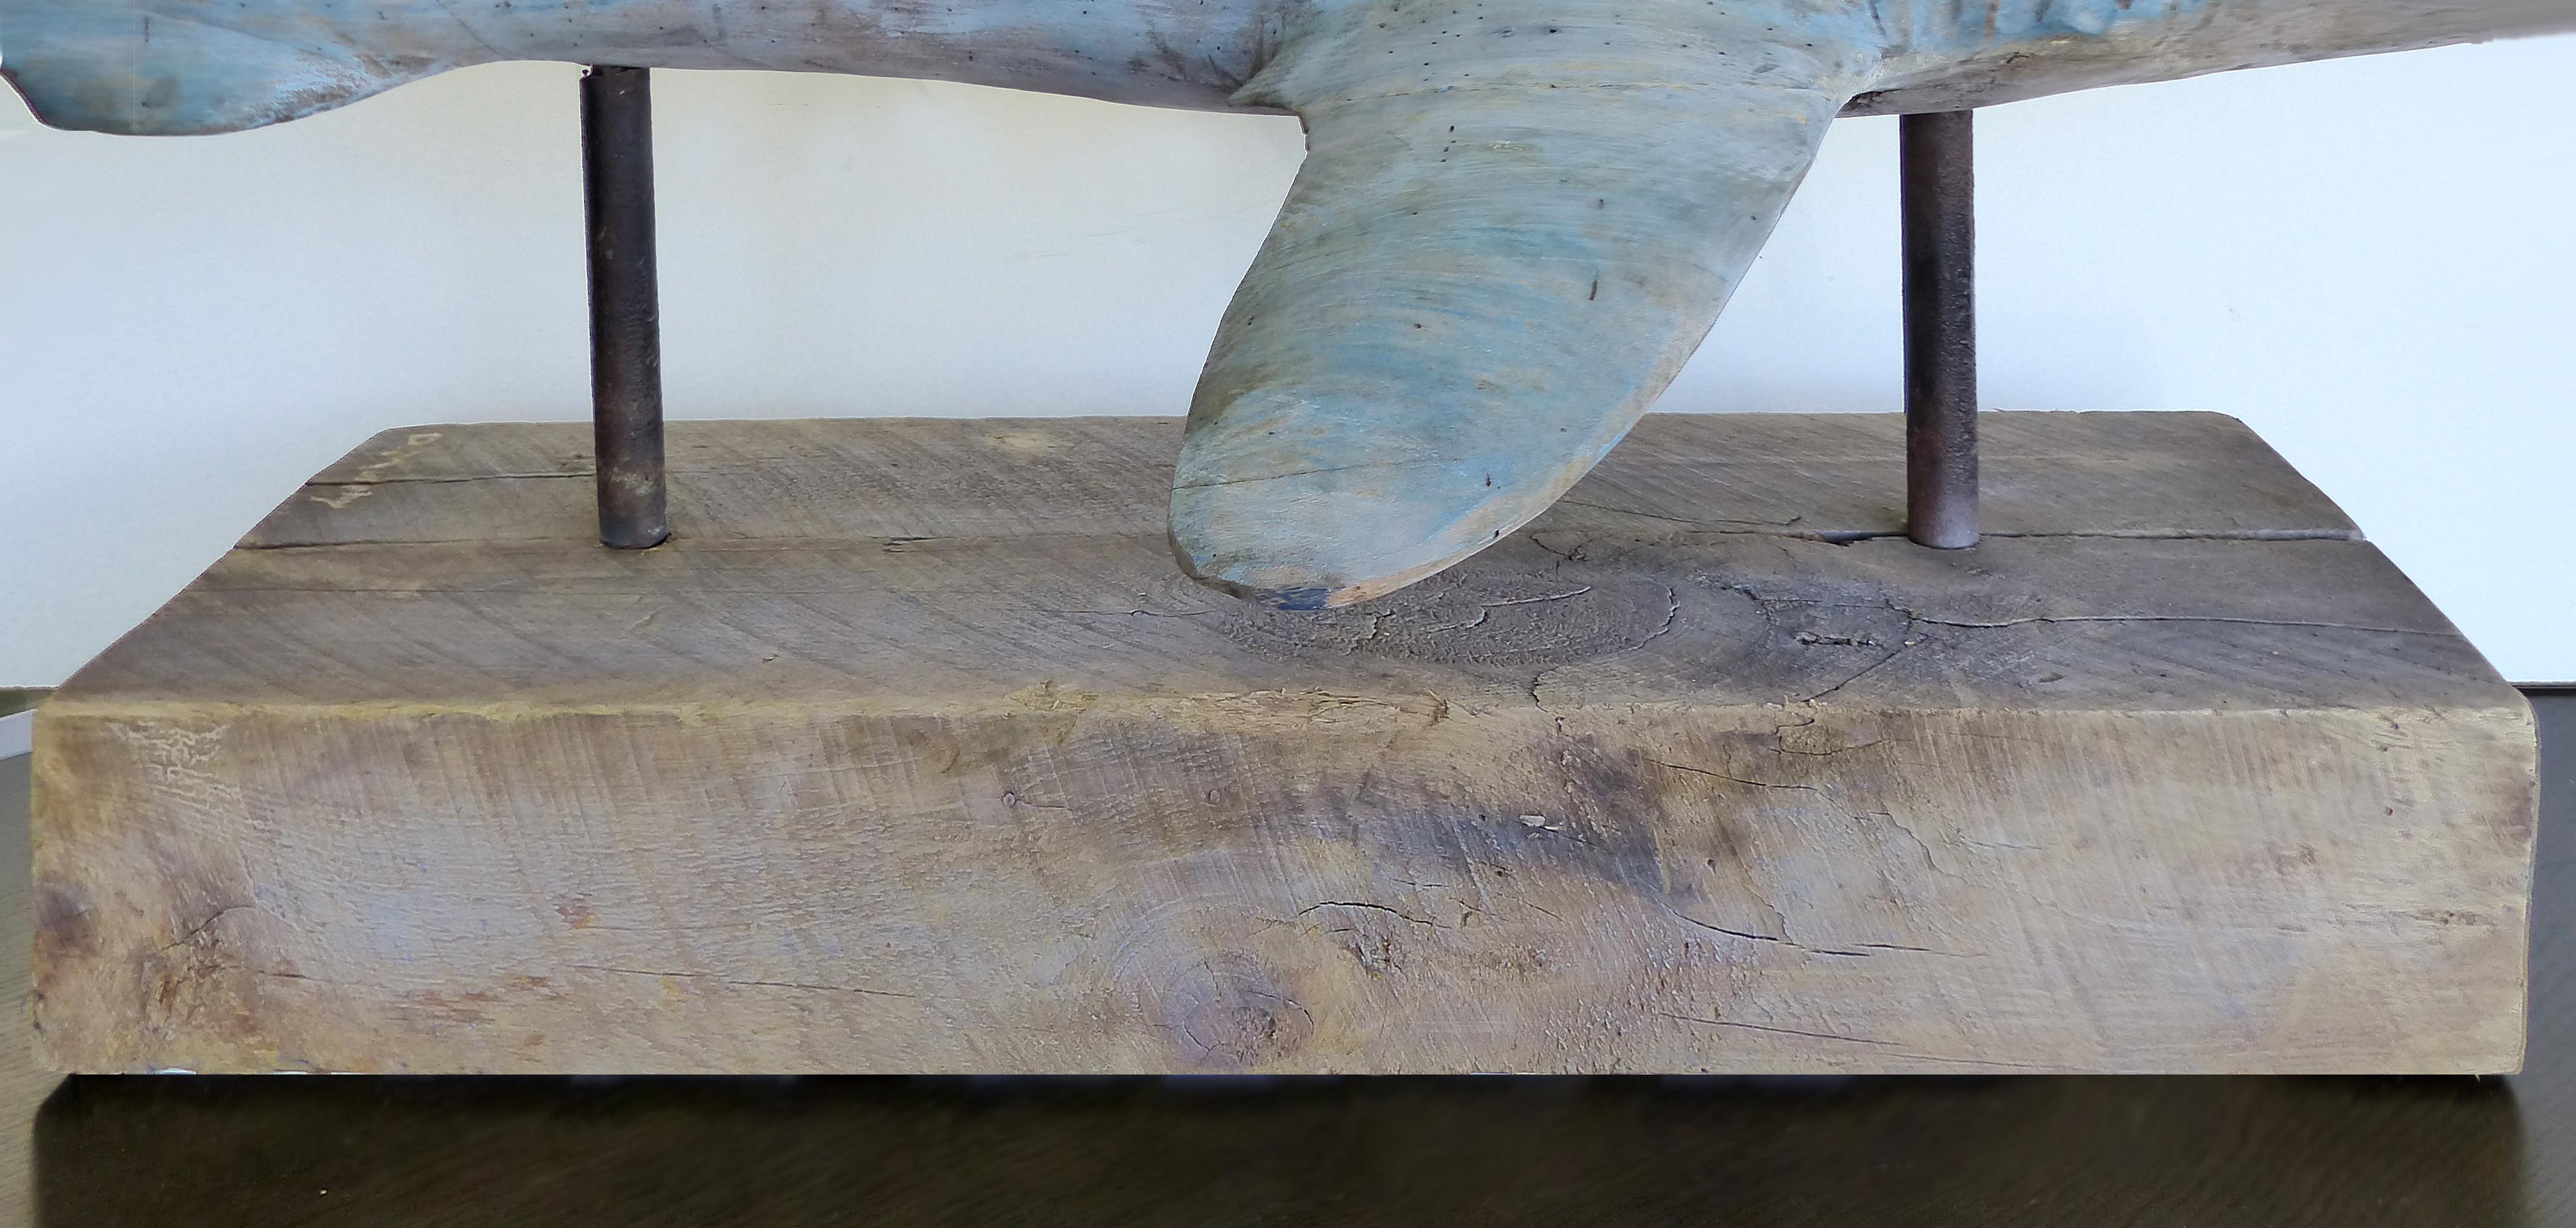 Copper Davis Murphy Hand Carved Sculpture of a Hammerhead Shark, 2018